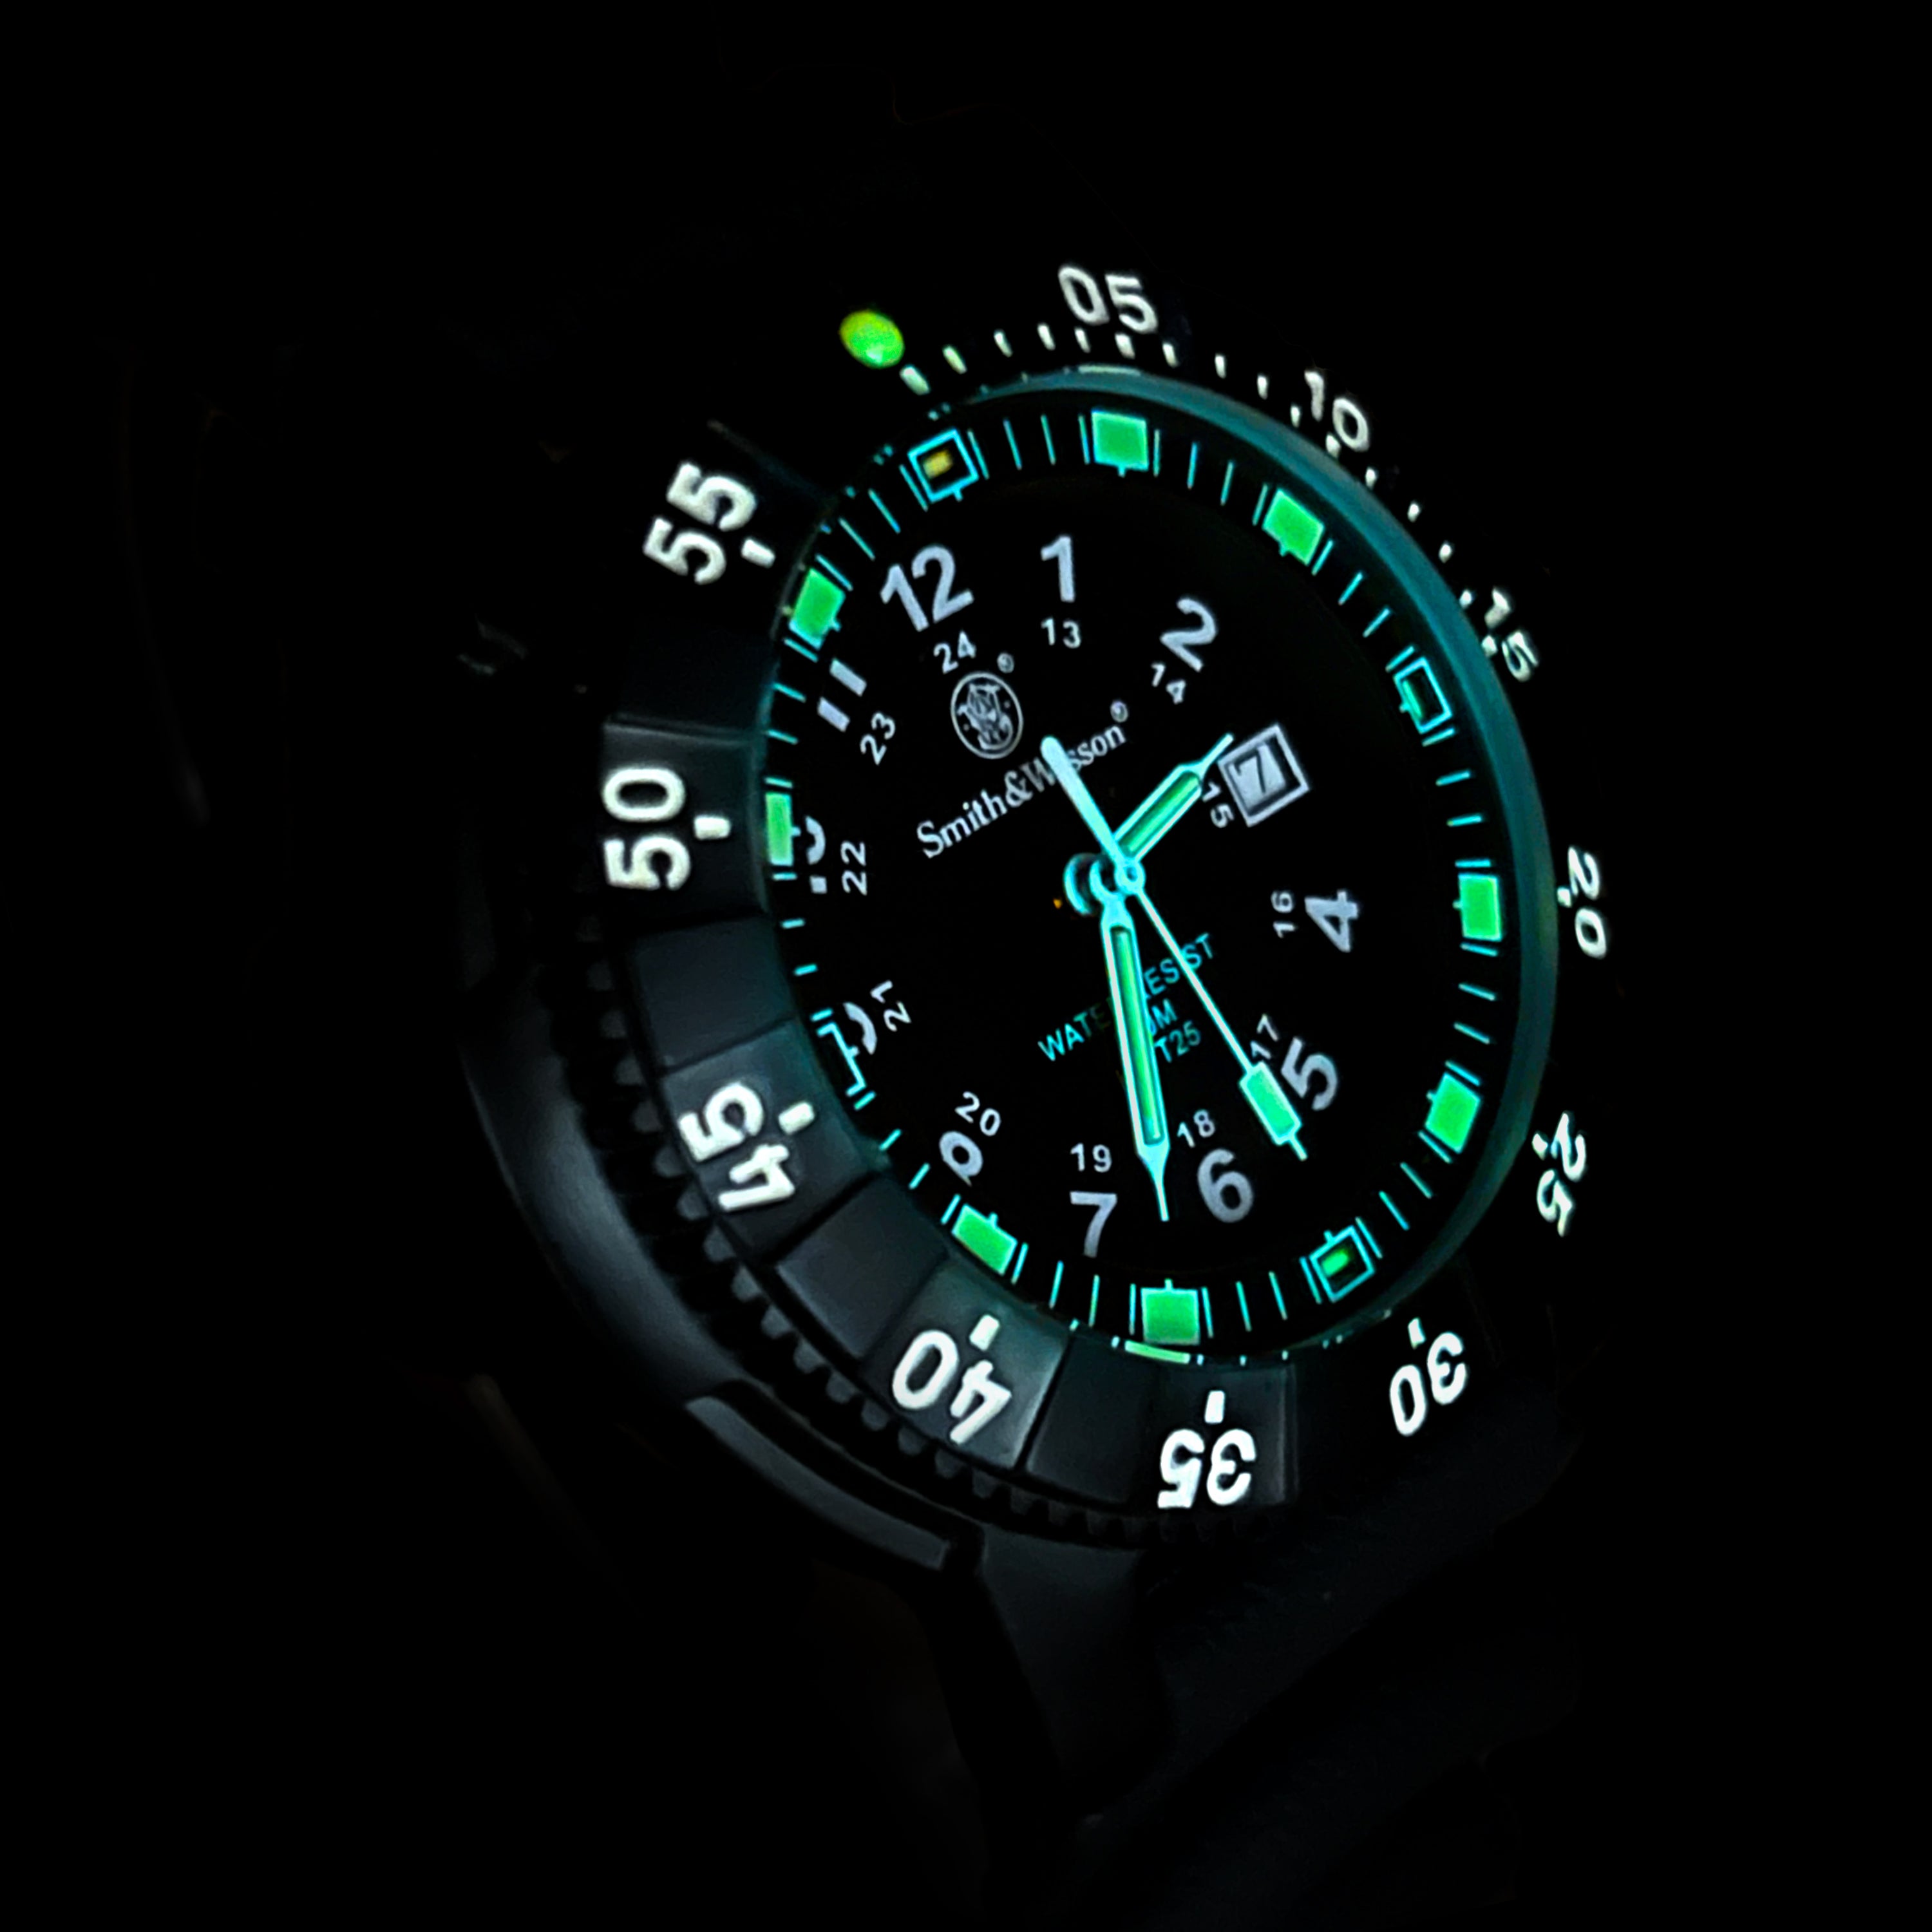 Diver Watch, Tritium, 45 mm, Black w/Rubber Strap